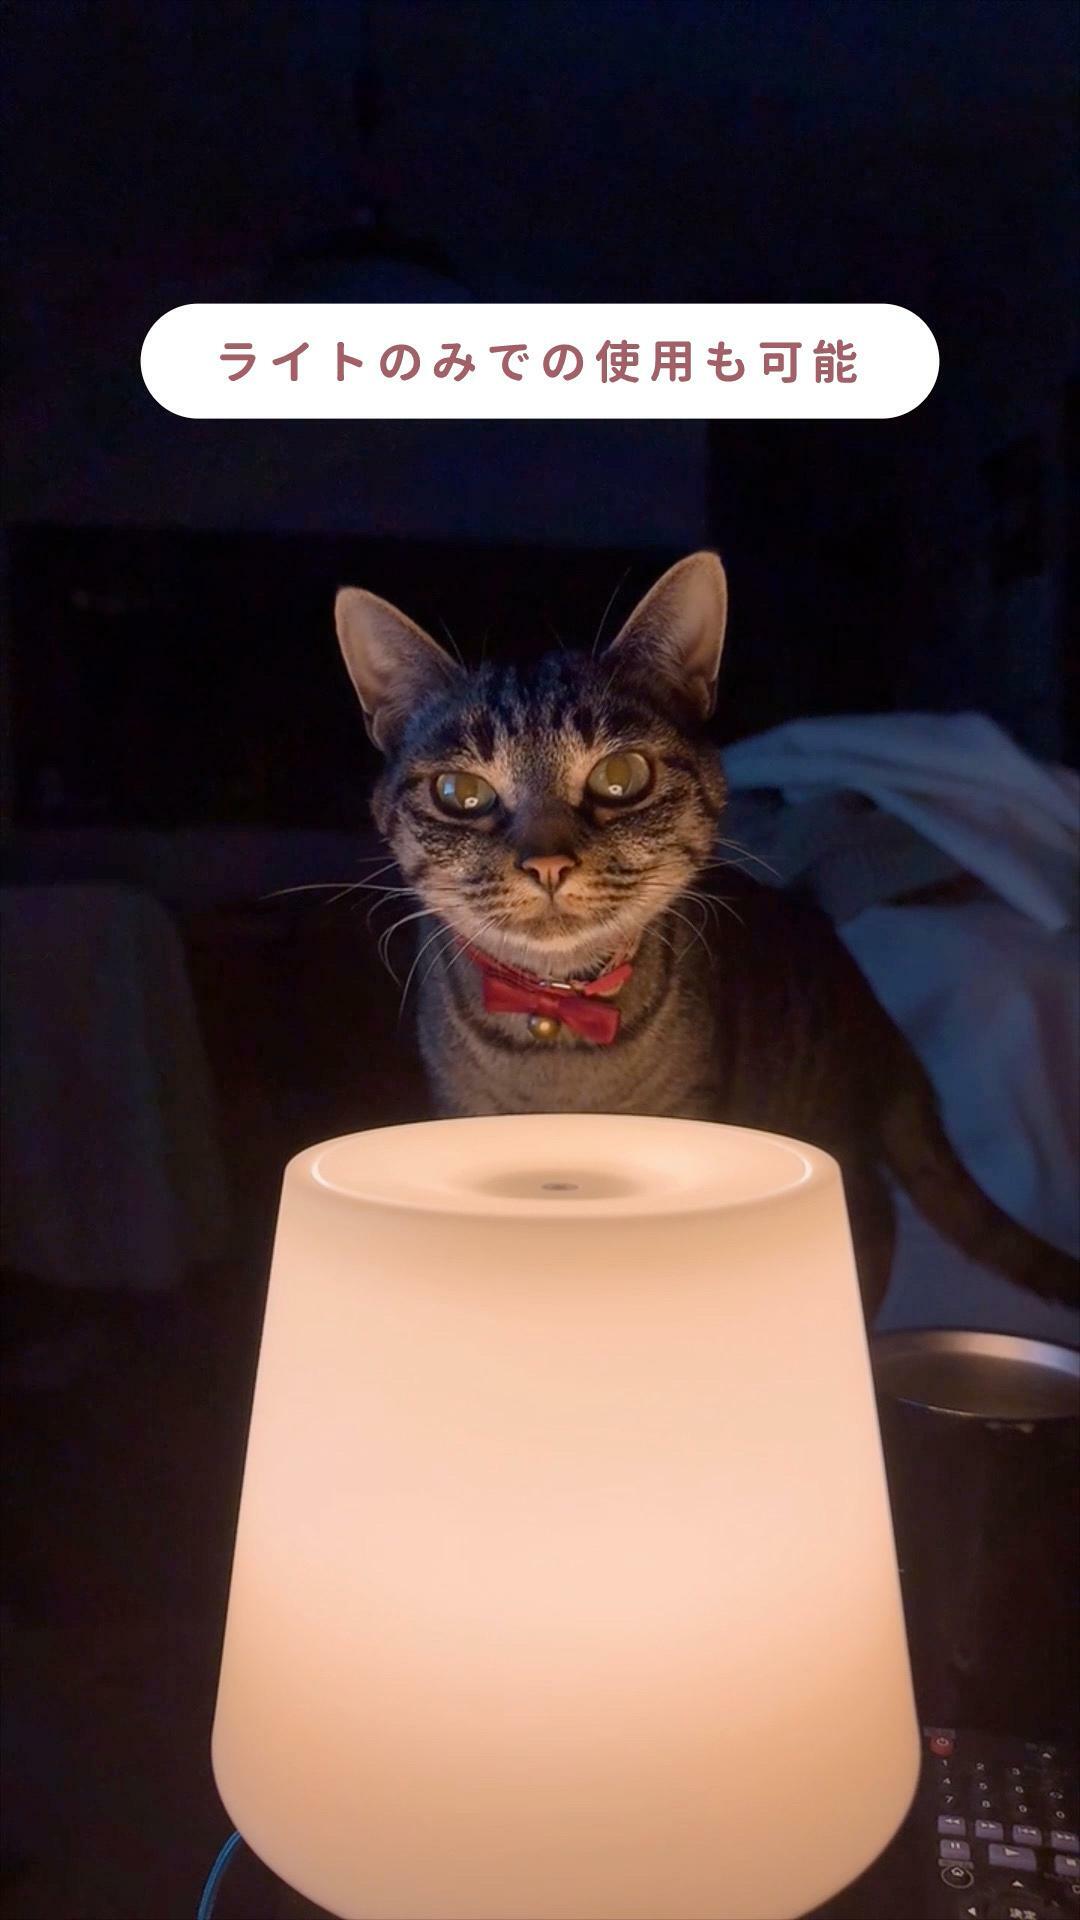 猫ちゃんにアロマはNGですが、アロマを入れなければランプとして使うことができます。